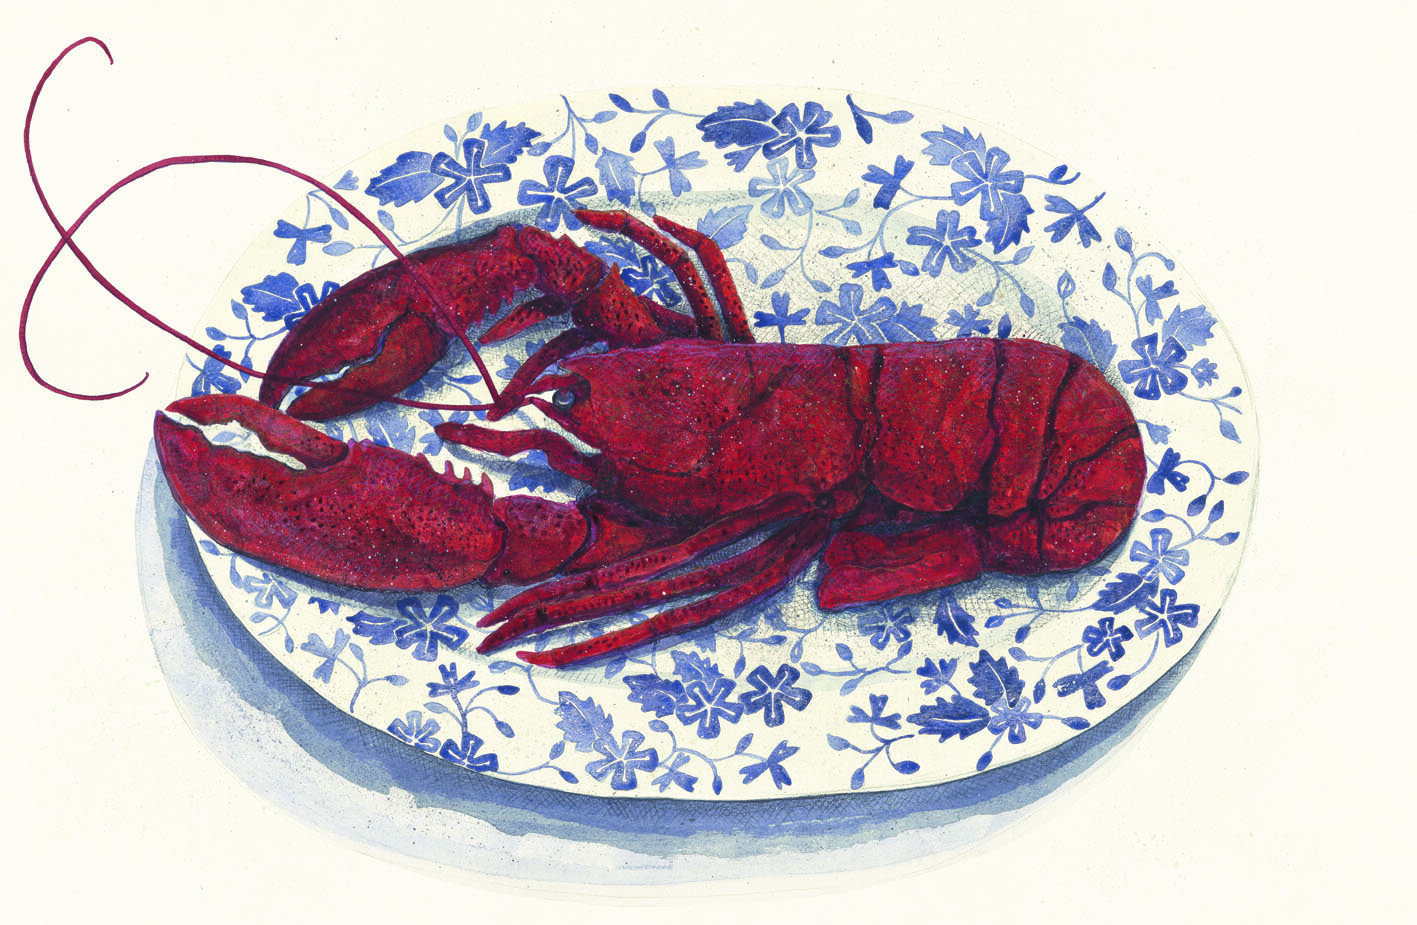 Cornish lobster240dpi.jpg